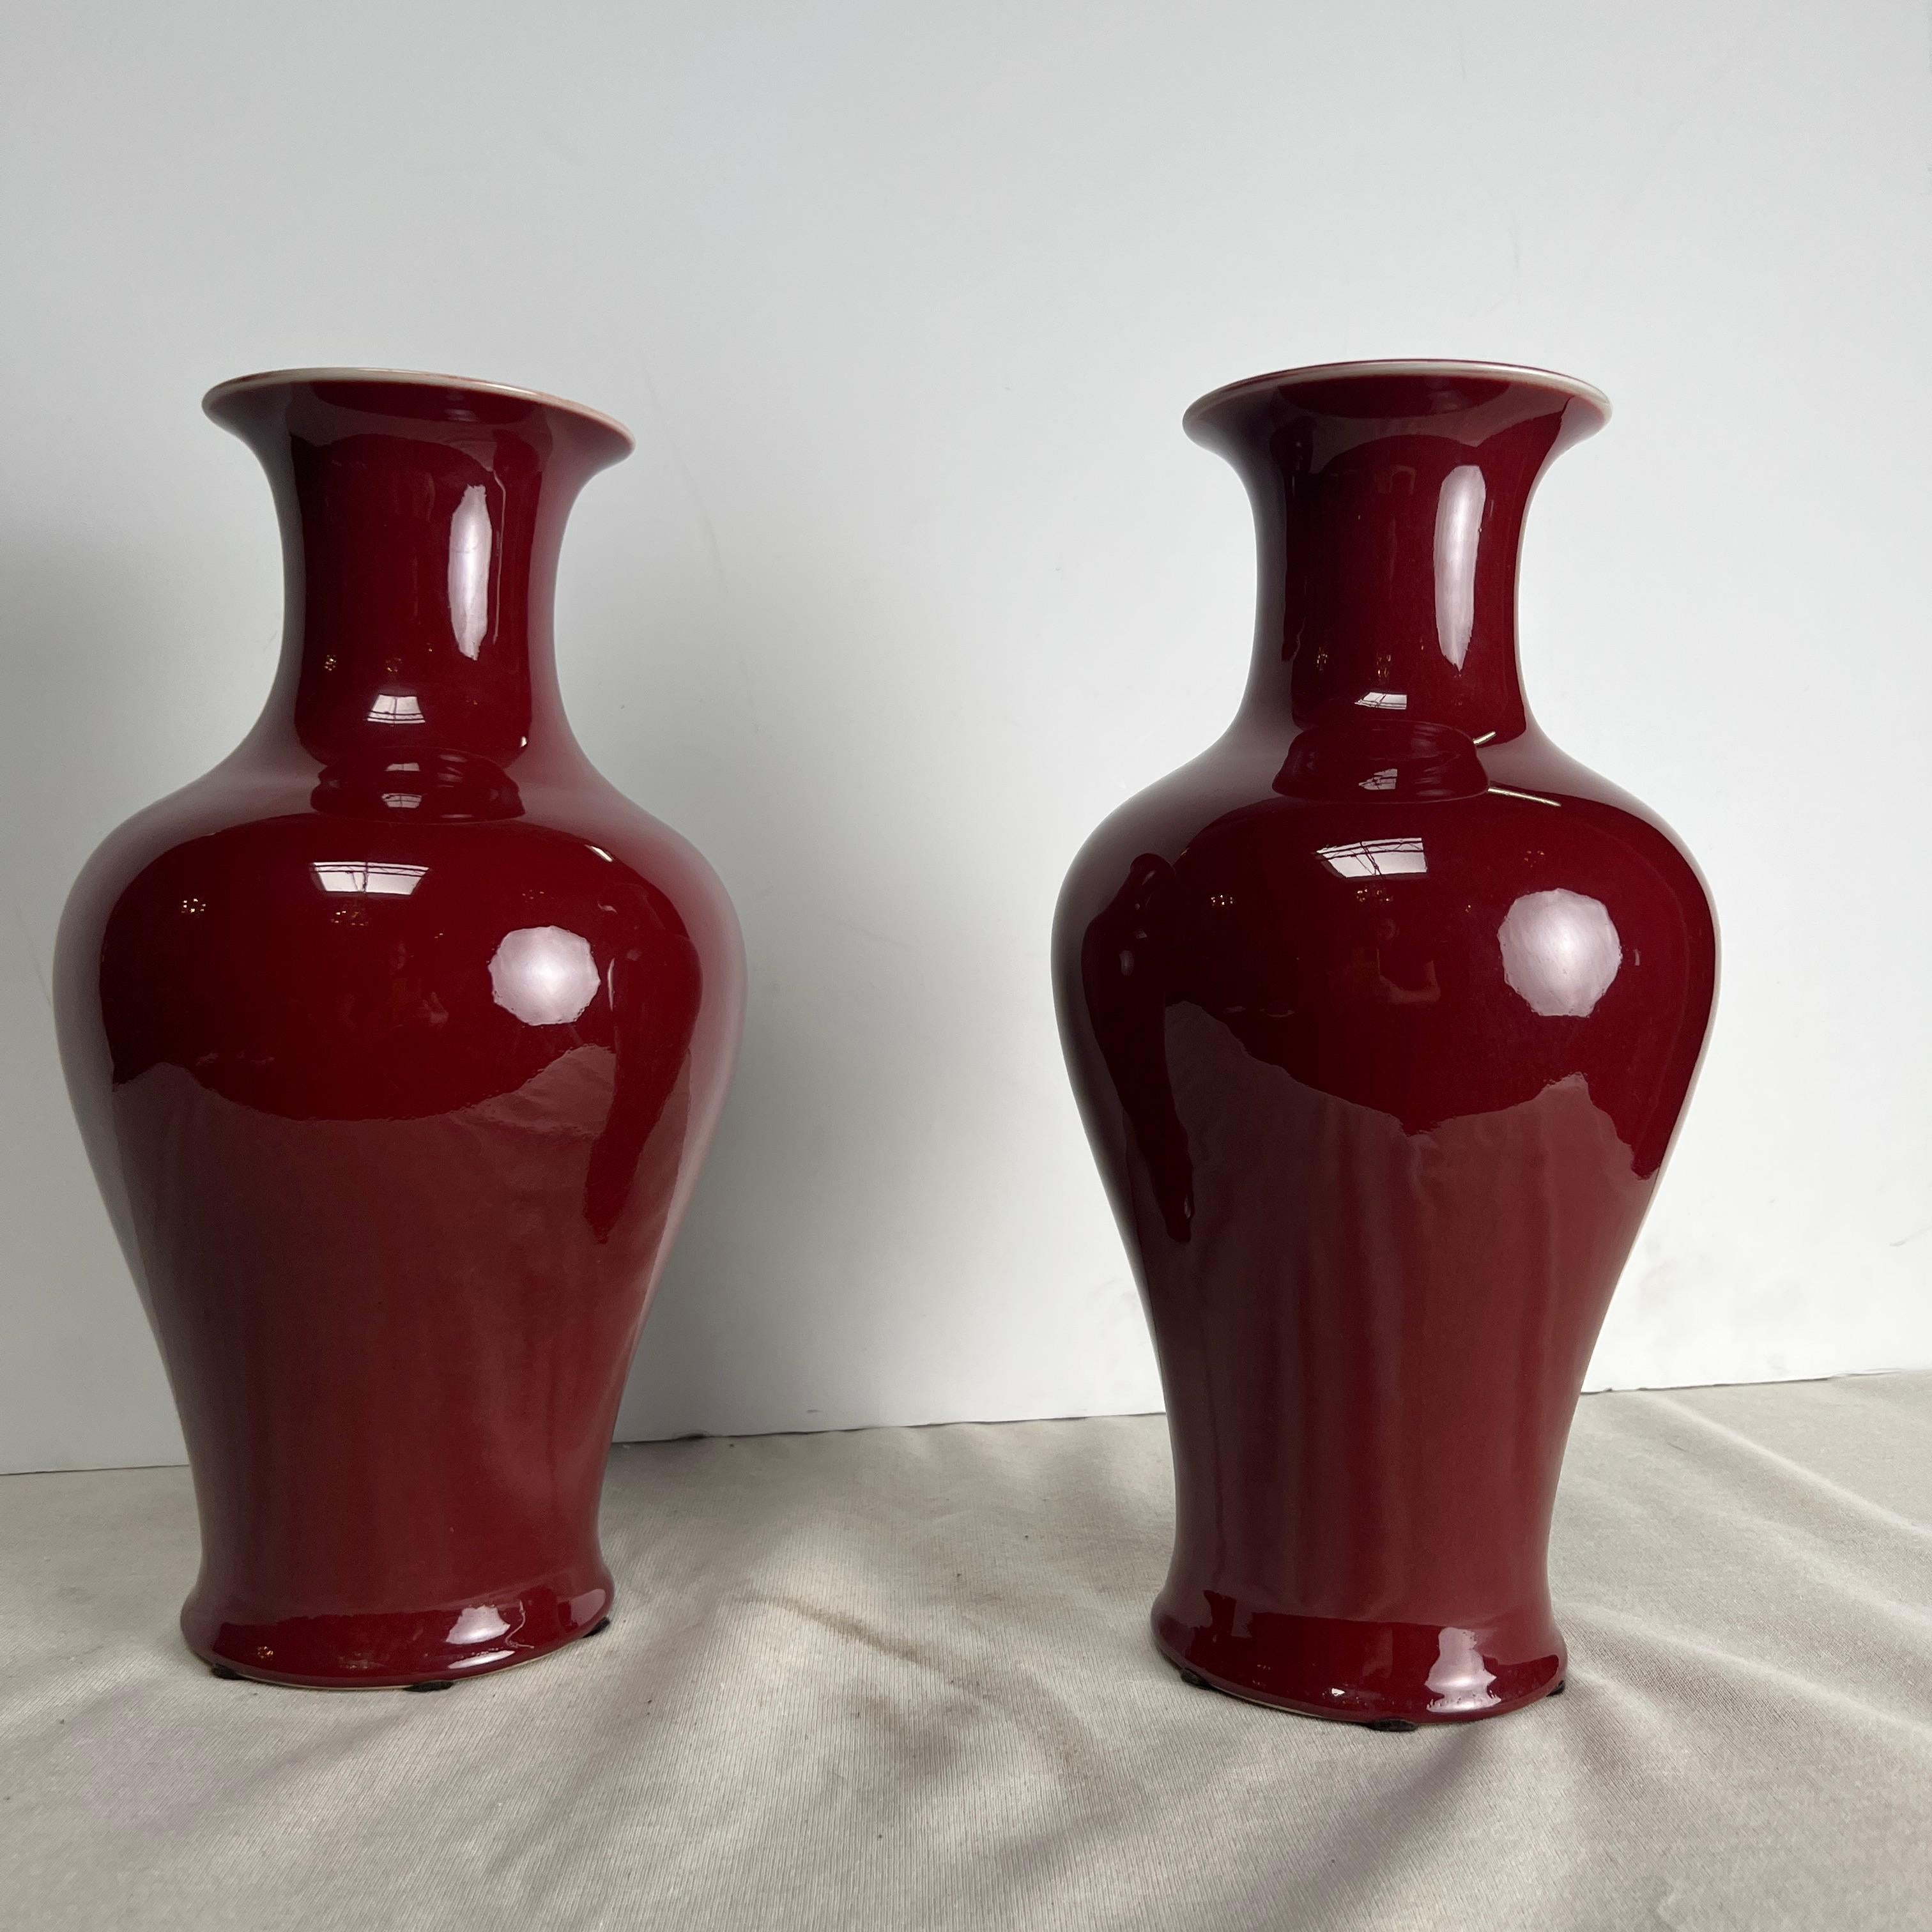 Paire de vases en porcelaine chinoise à glaçure rouge sang de bœuf. Ces grands vases sont très décoratifs et feraient une excellente paire de lampes ou de vases.  